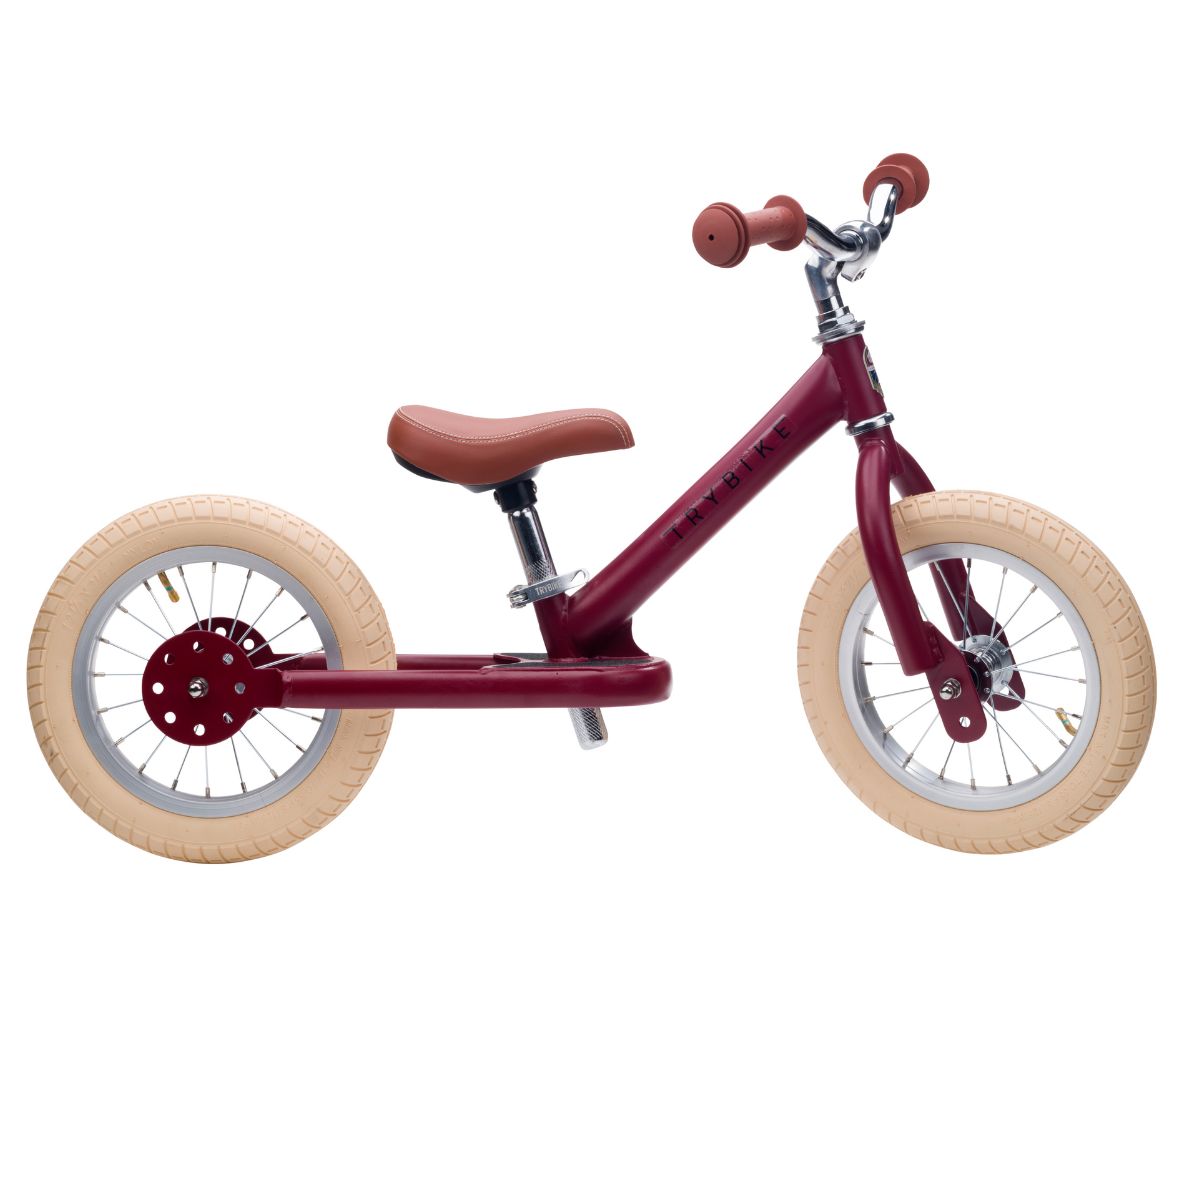 Bestel de Trybike steel 2-in-1 driewieler in de kleur mat rood en laat je kindje het plezier van fietsen ontdekken! Eenvoudig om te bouwen van een loopfiets naar een echte fiets. Duurzaam en veilig. VanZus